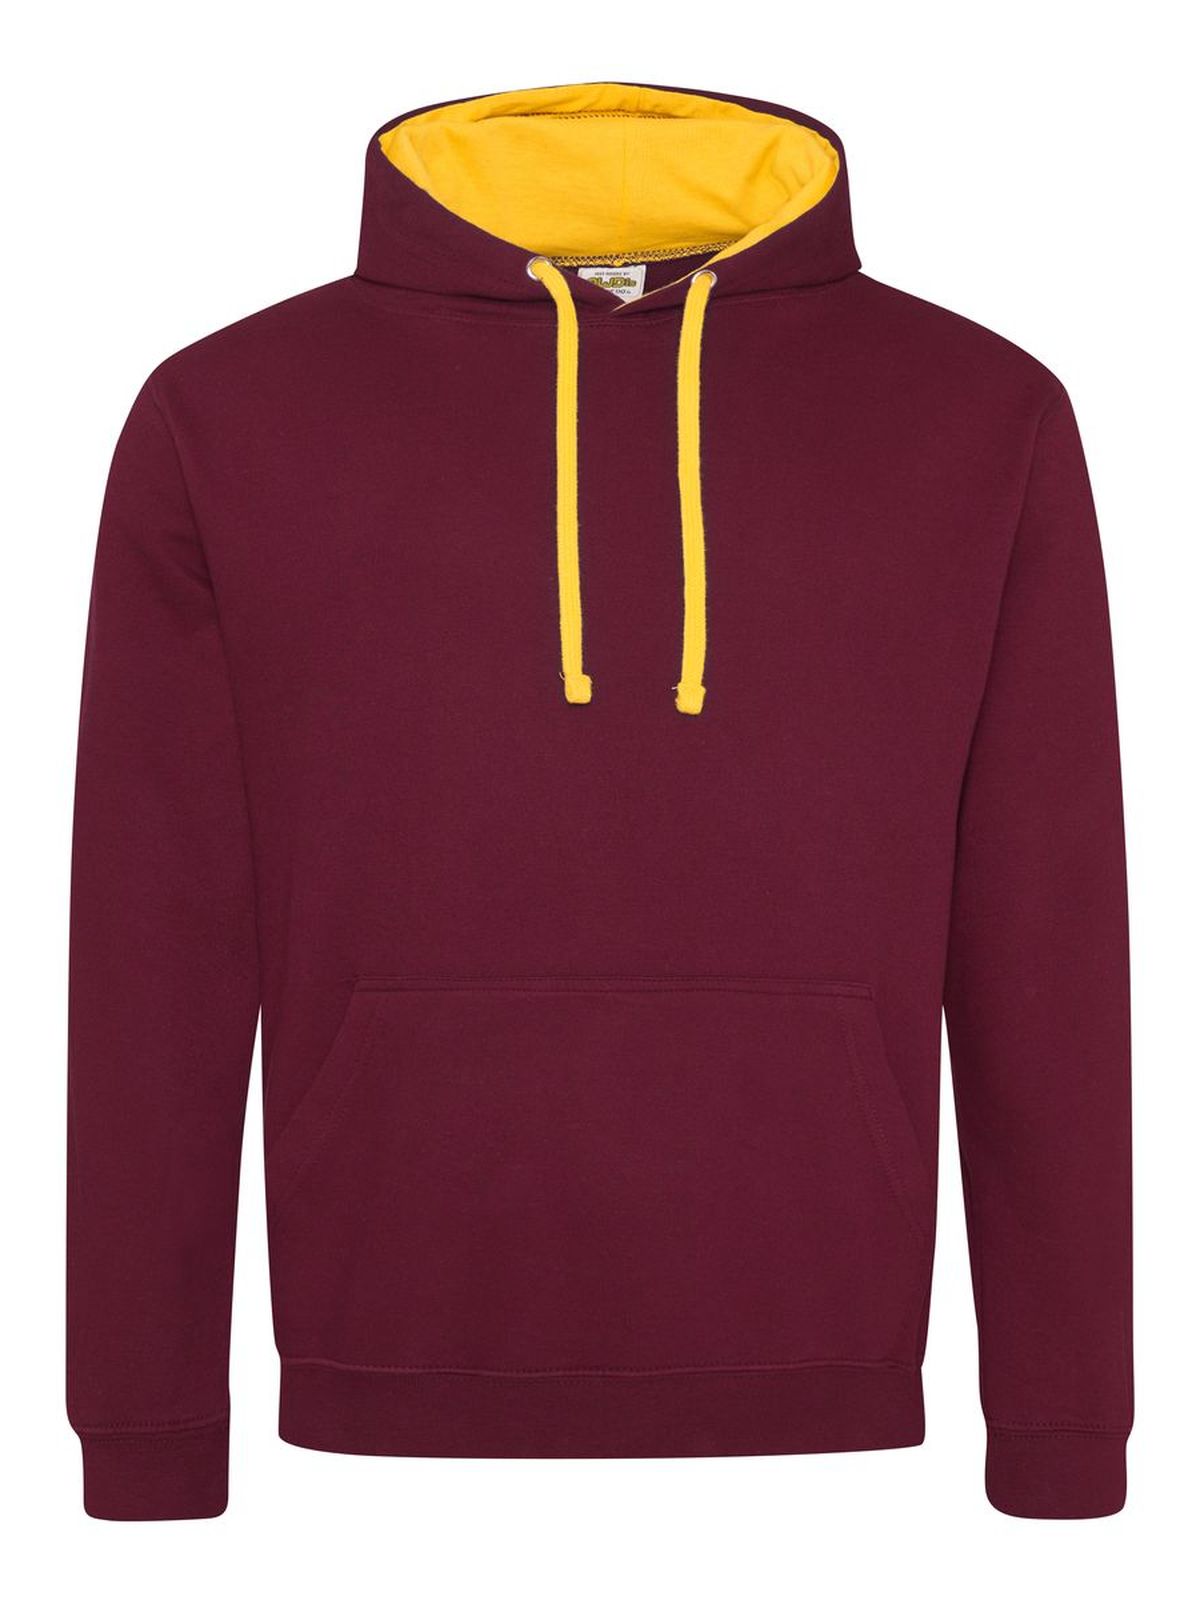 varsity-hoodie-burgundy-gold.webp